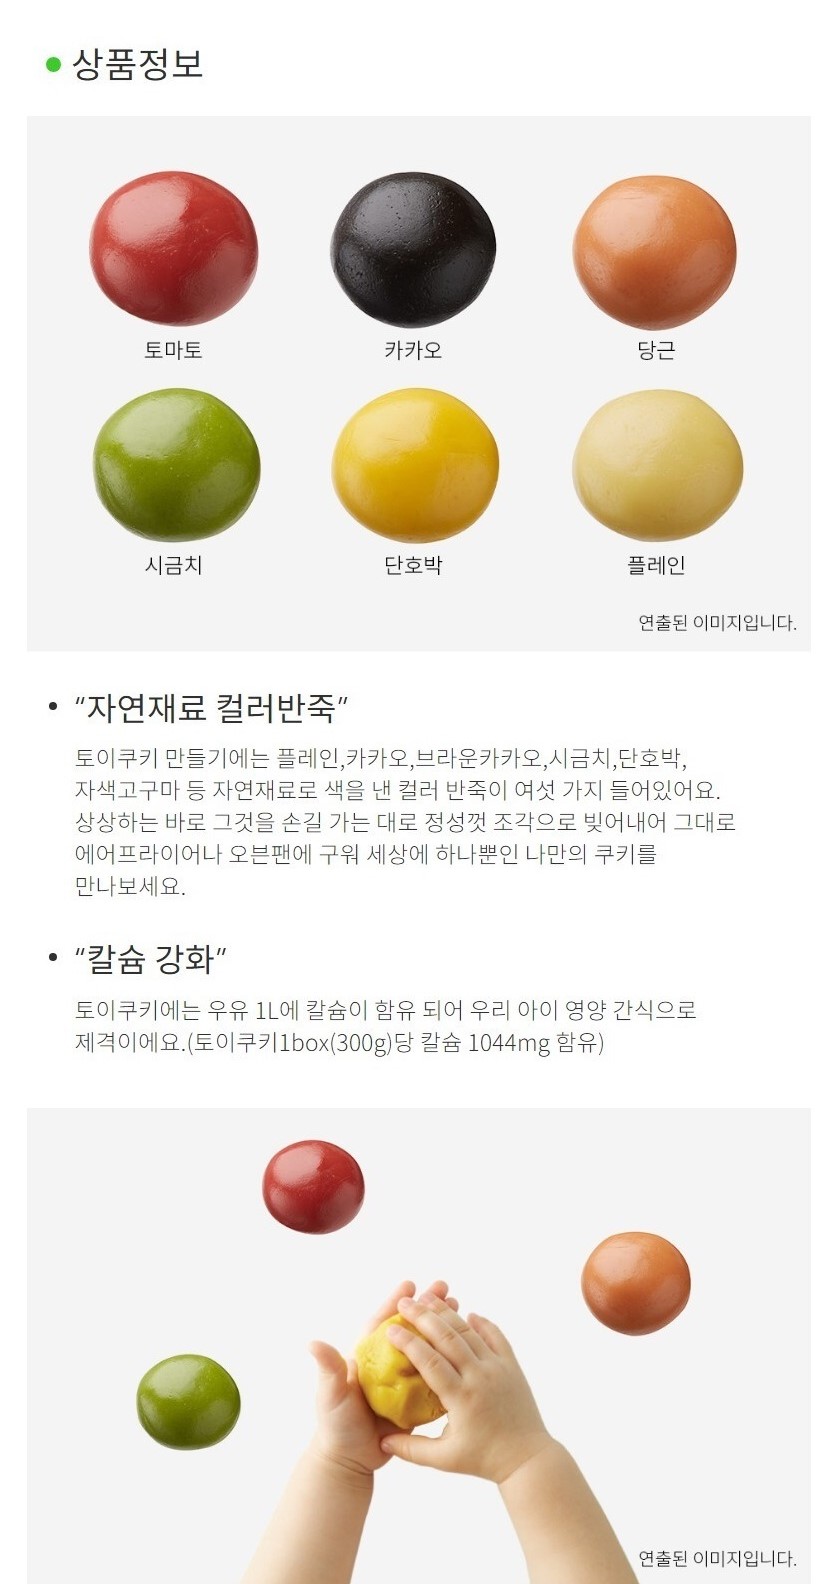 韓國食品-[풀무원] 토이쿠키 만들기 (신비한 바닷속 이야기) 300g